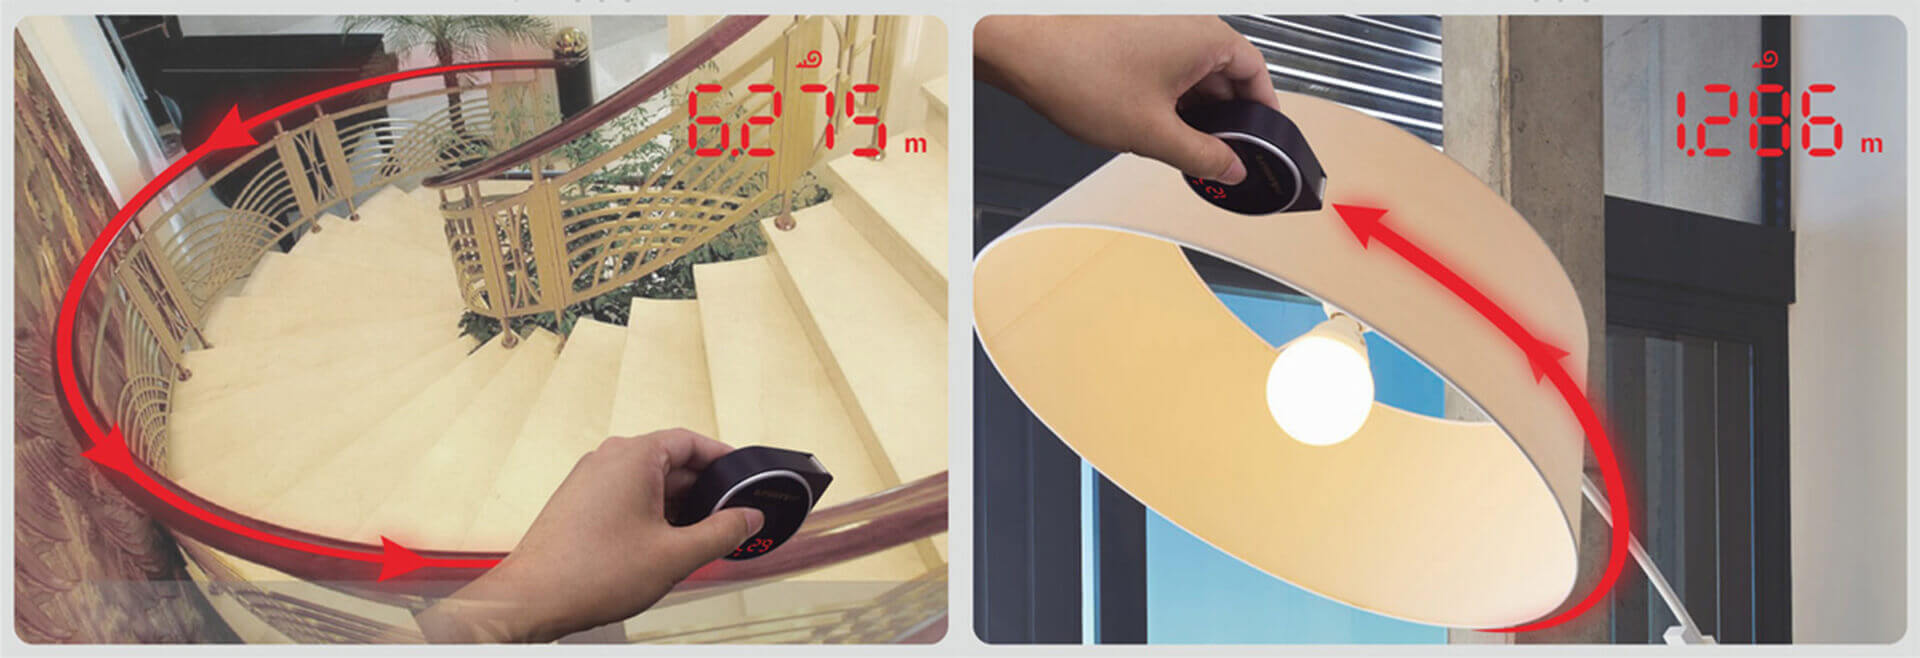 durable digital measuring tape top mode backlit for sale-6